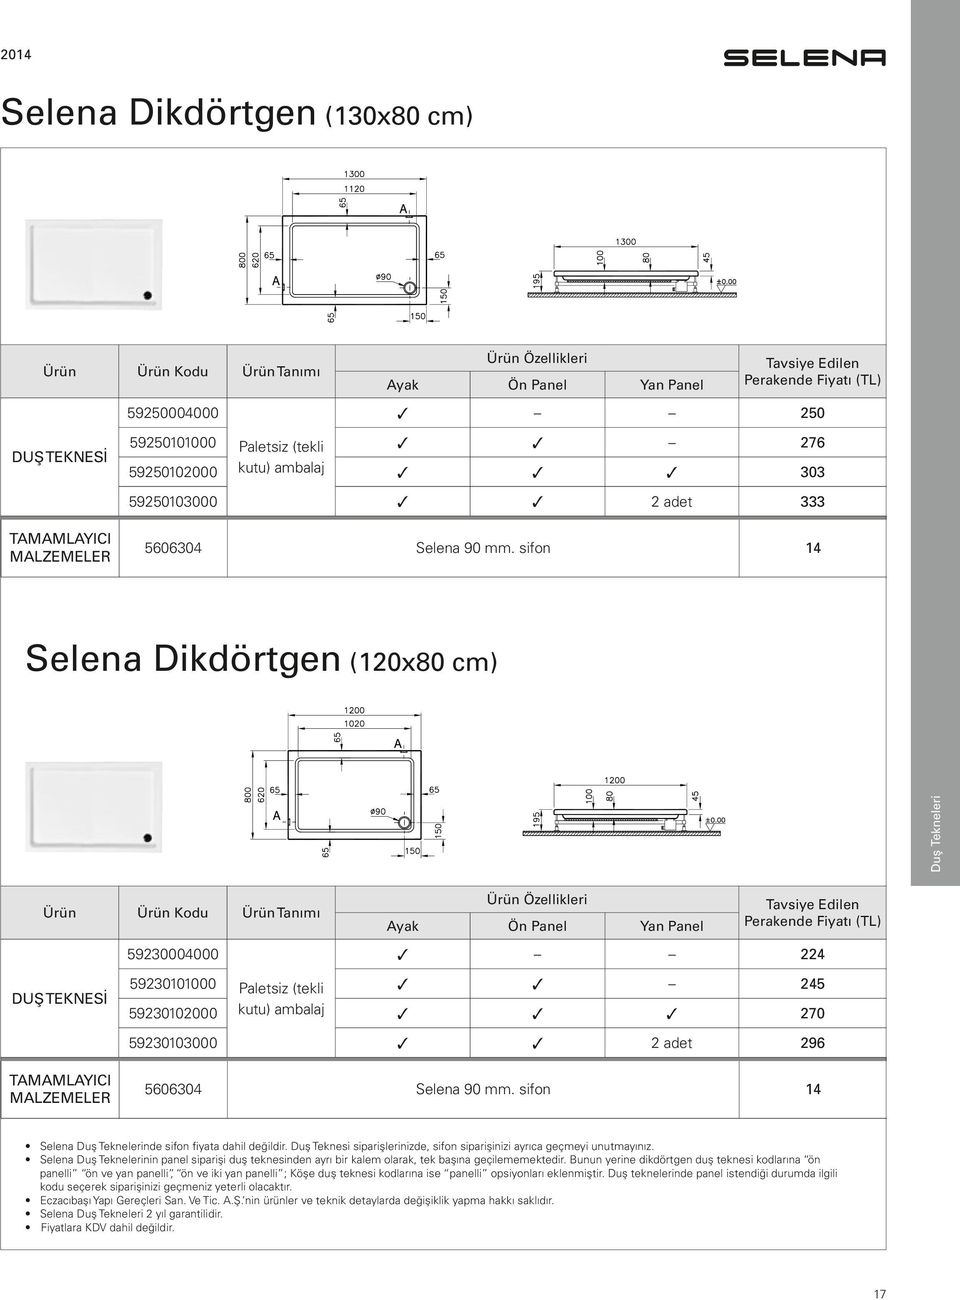 90 mm. sifon 14 Selena Duş Teknelerinde sifon fiyata dahil değildir. Duş Teknesi siparişlerinizde, sifon siparişinizi ayrıca geçmeyi unutmayınız.